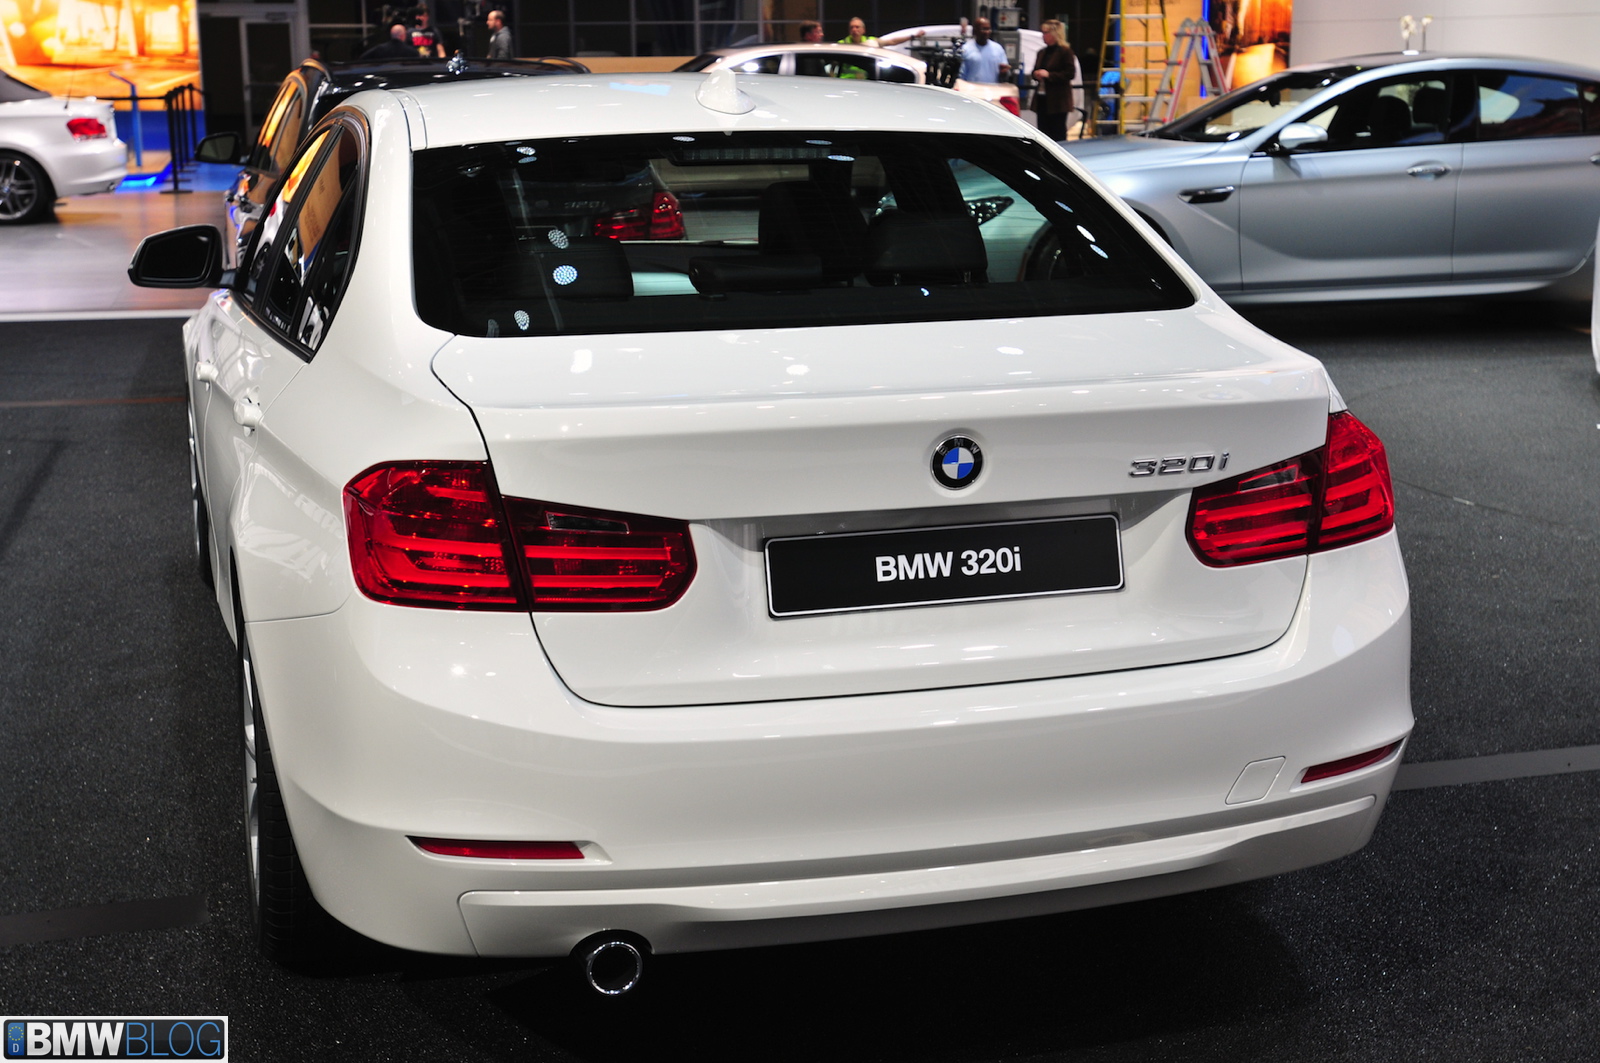 BMW 320i - U.S. Debut